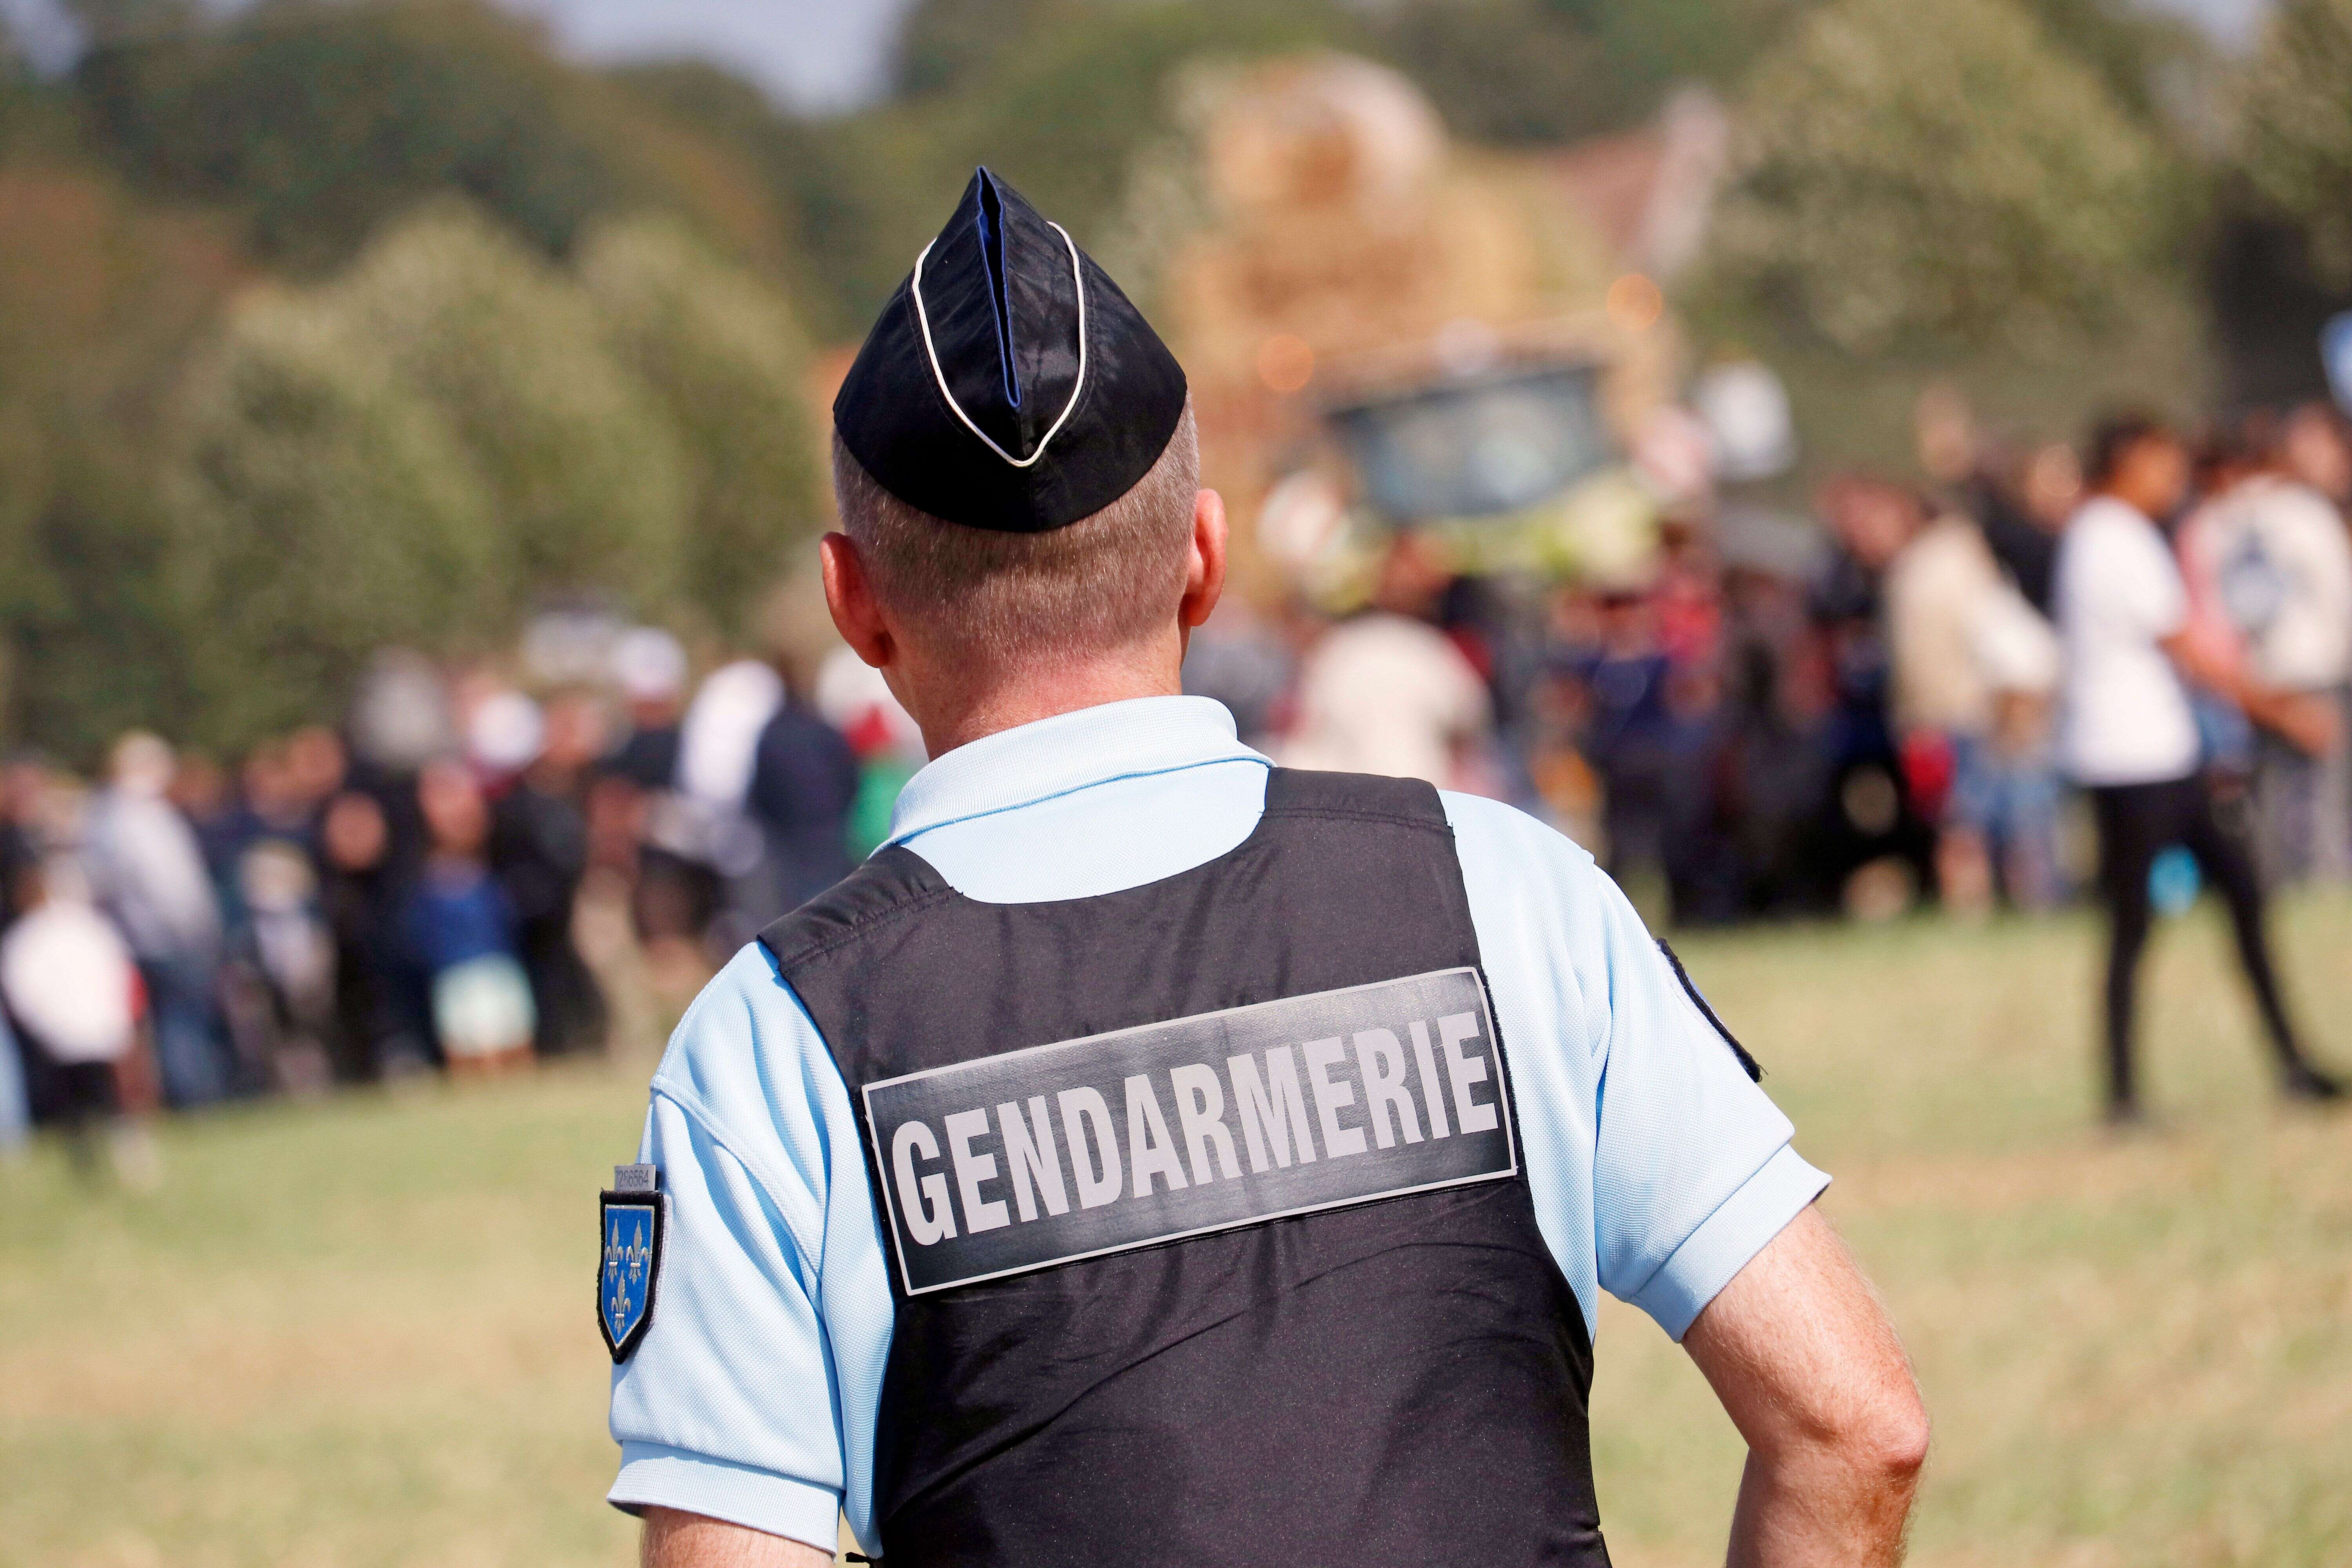 Une rave-party interrompue par des gendarmes dans les Côtes-d'Armor (Photo prétexte d'un gendarme lors d'un rassemblement culturel)